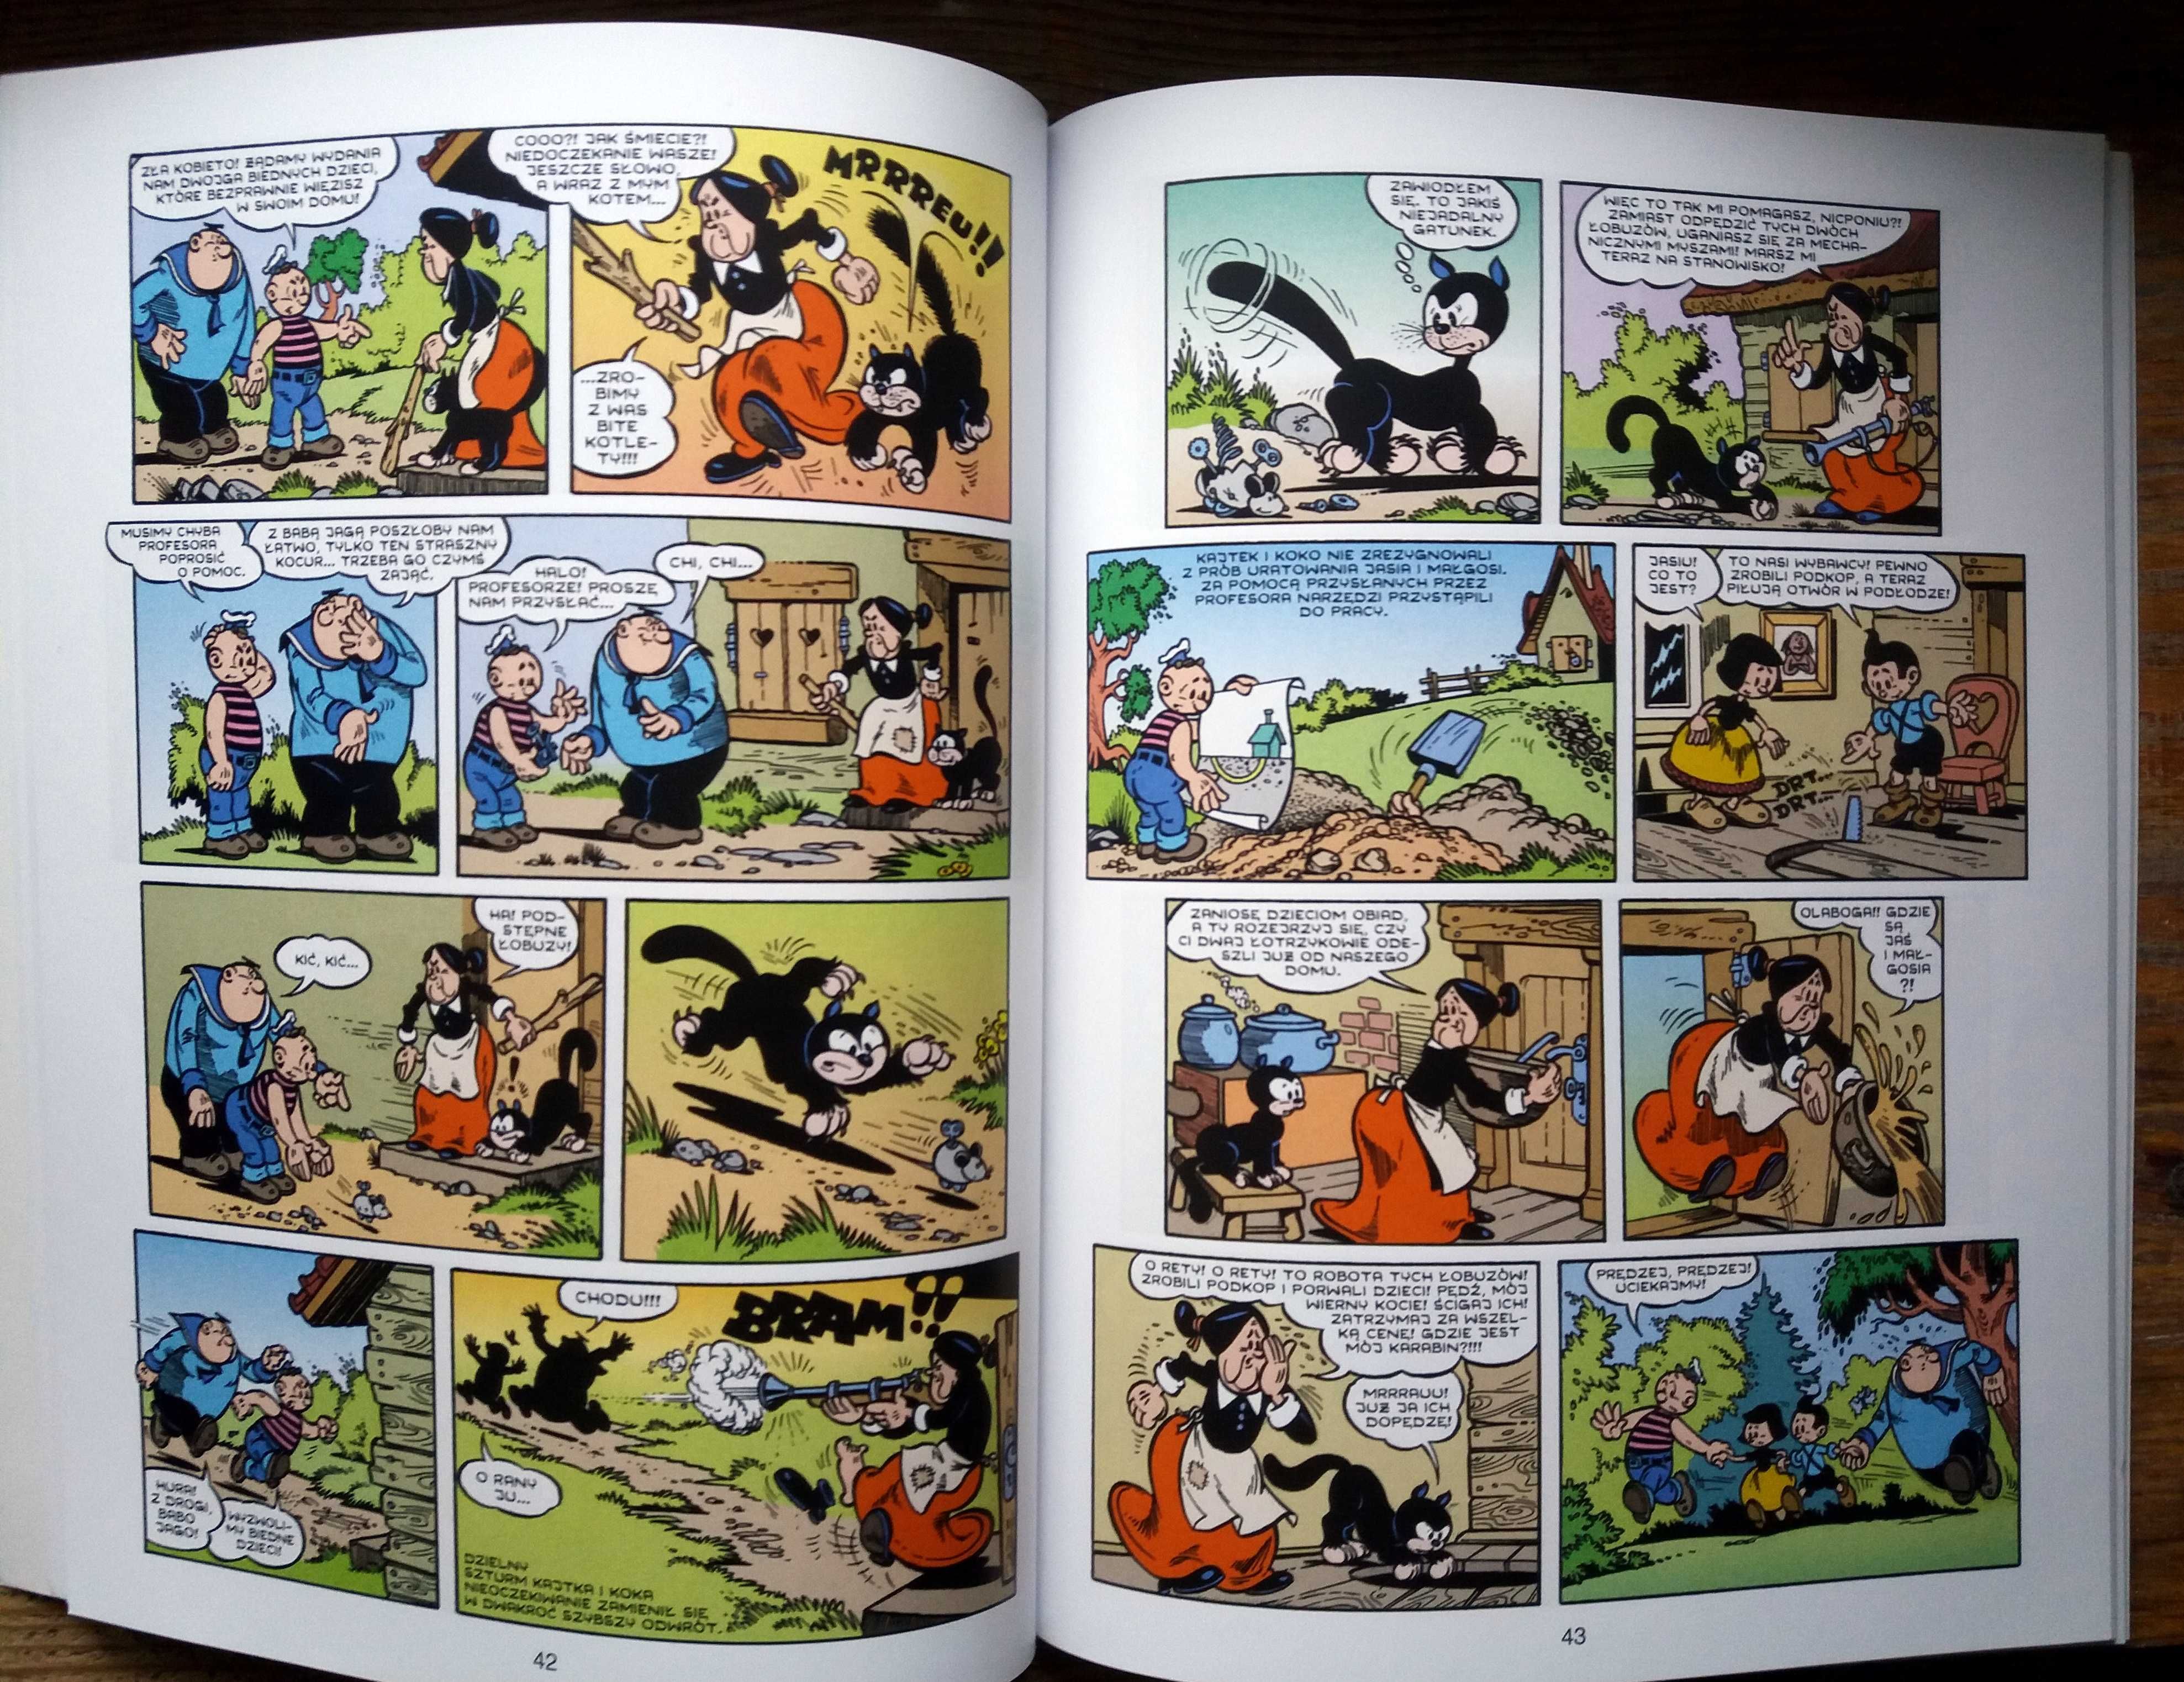 Kajtek i Koko - W Krainie Baśni - Zły Książę komiks nowy unikat